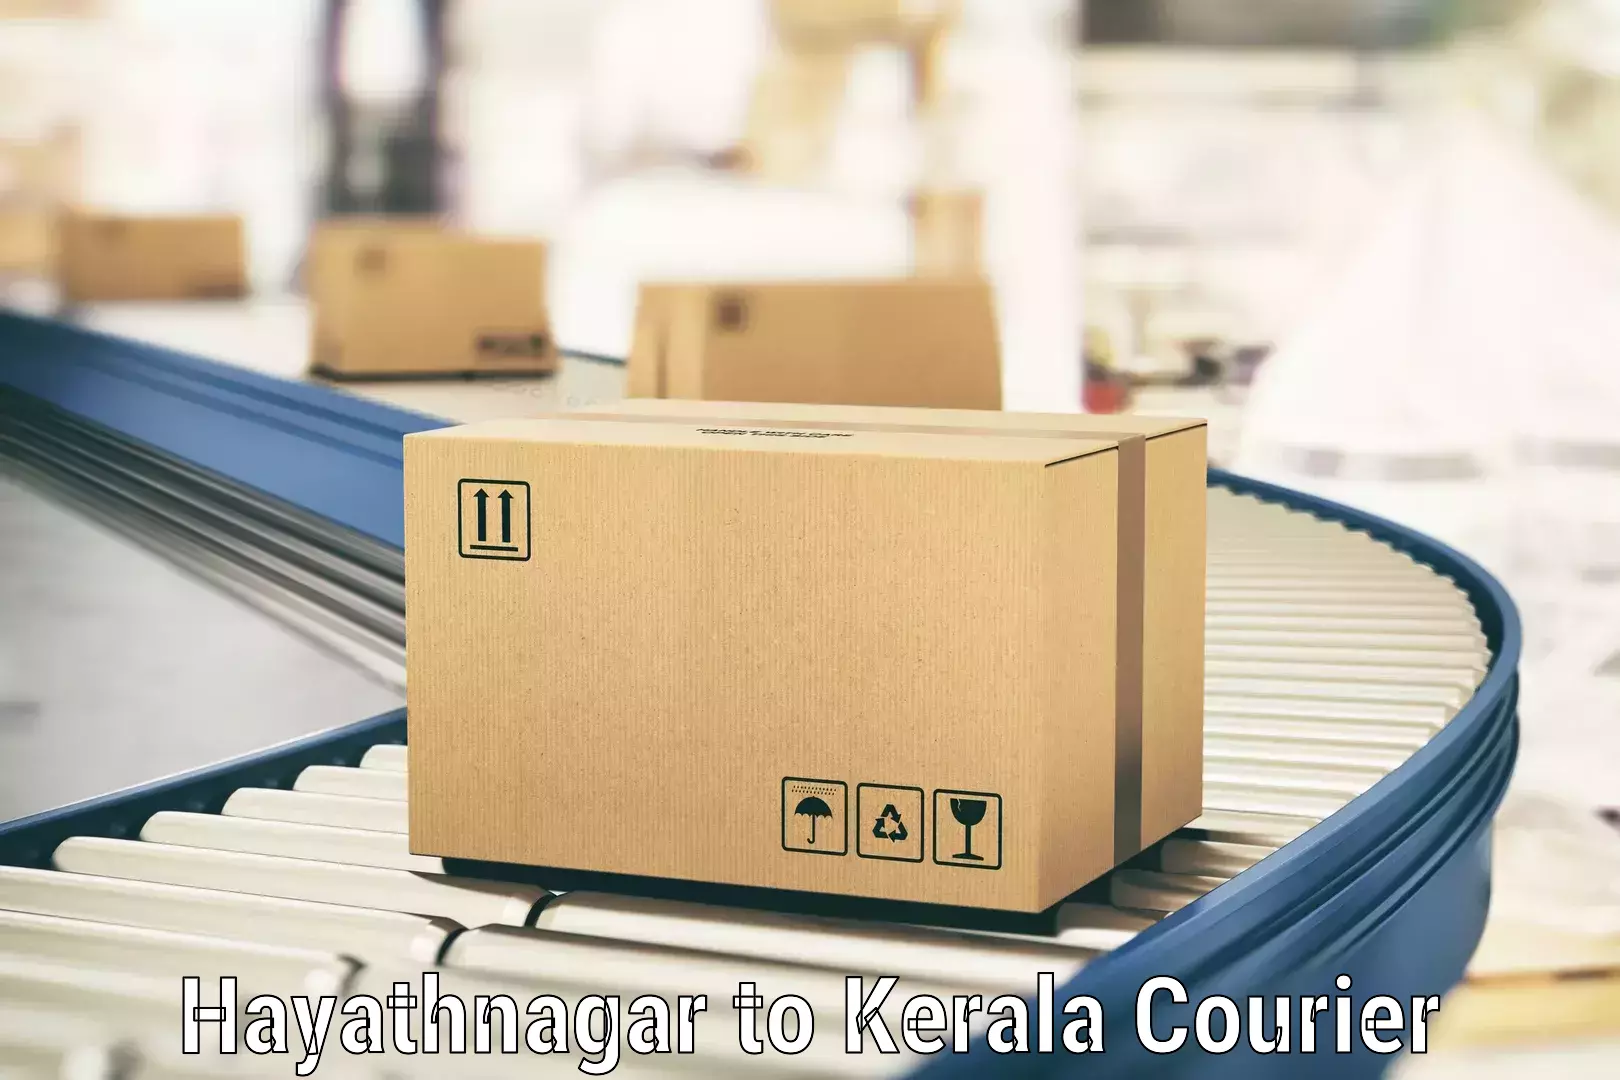 Modern courier technology Hayathnagar to Neyyattinkara